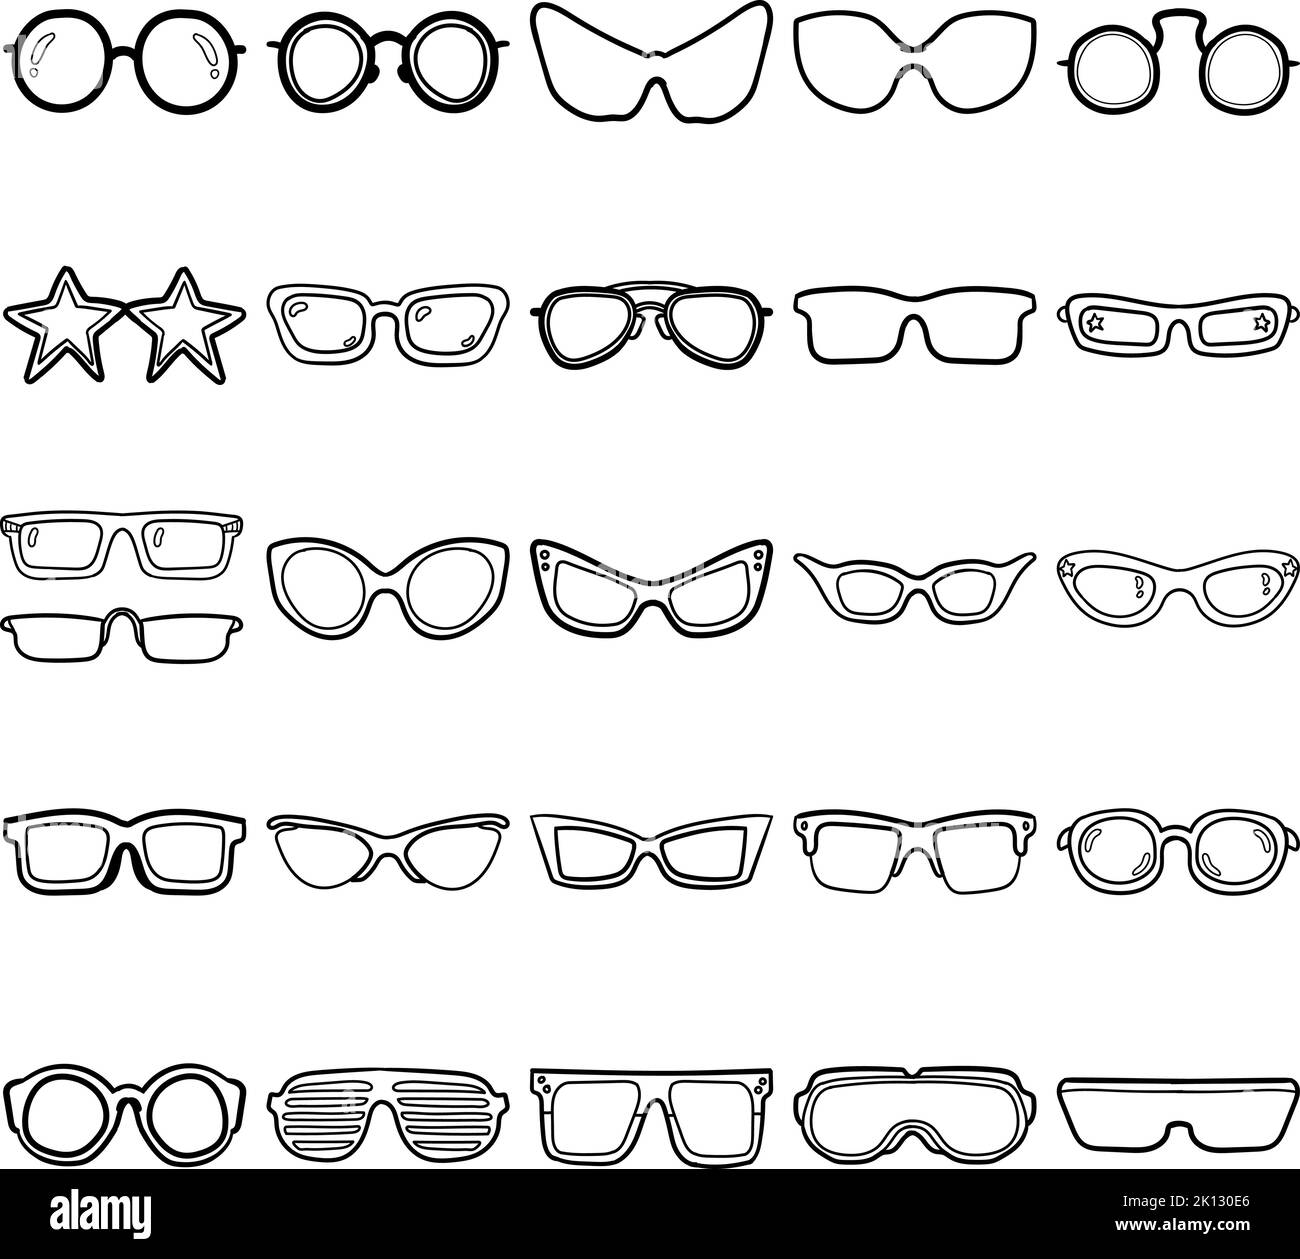 Lunettes dessin main Doodle Line Art ensemble de contour contenant des lunettes, des lunettes de soleil, des lunettes de vue, des lunettes, un cadre rond, Cadre ovale, cadre Boston Illustration de Vecteur